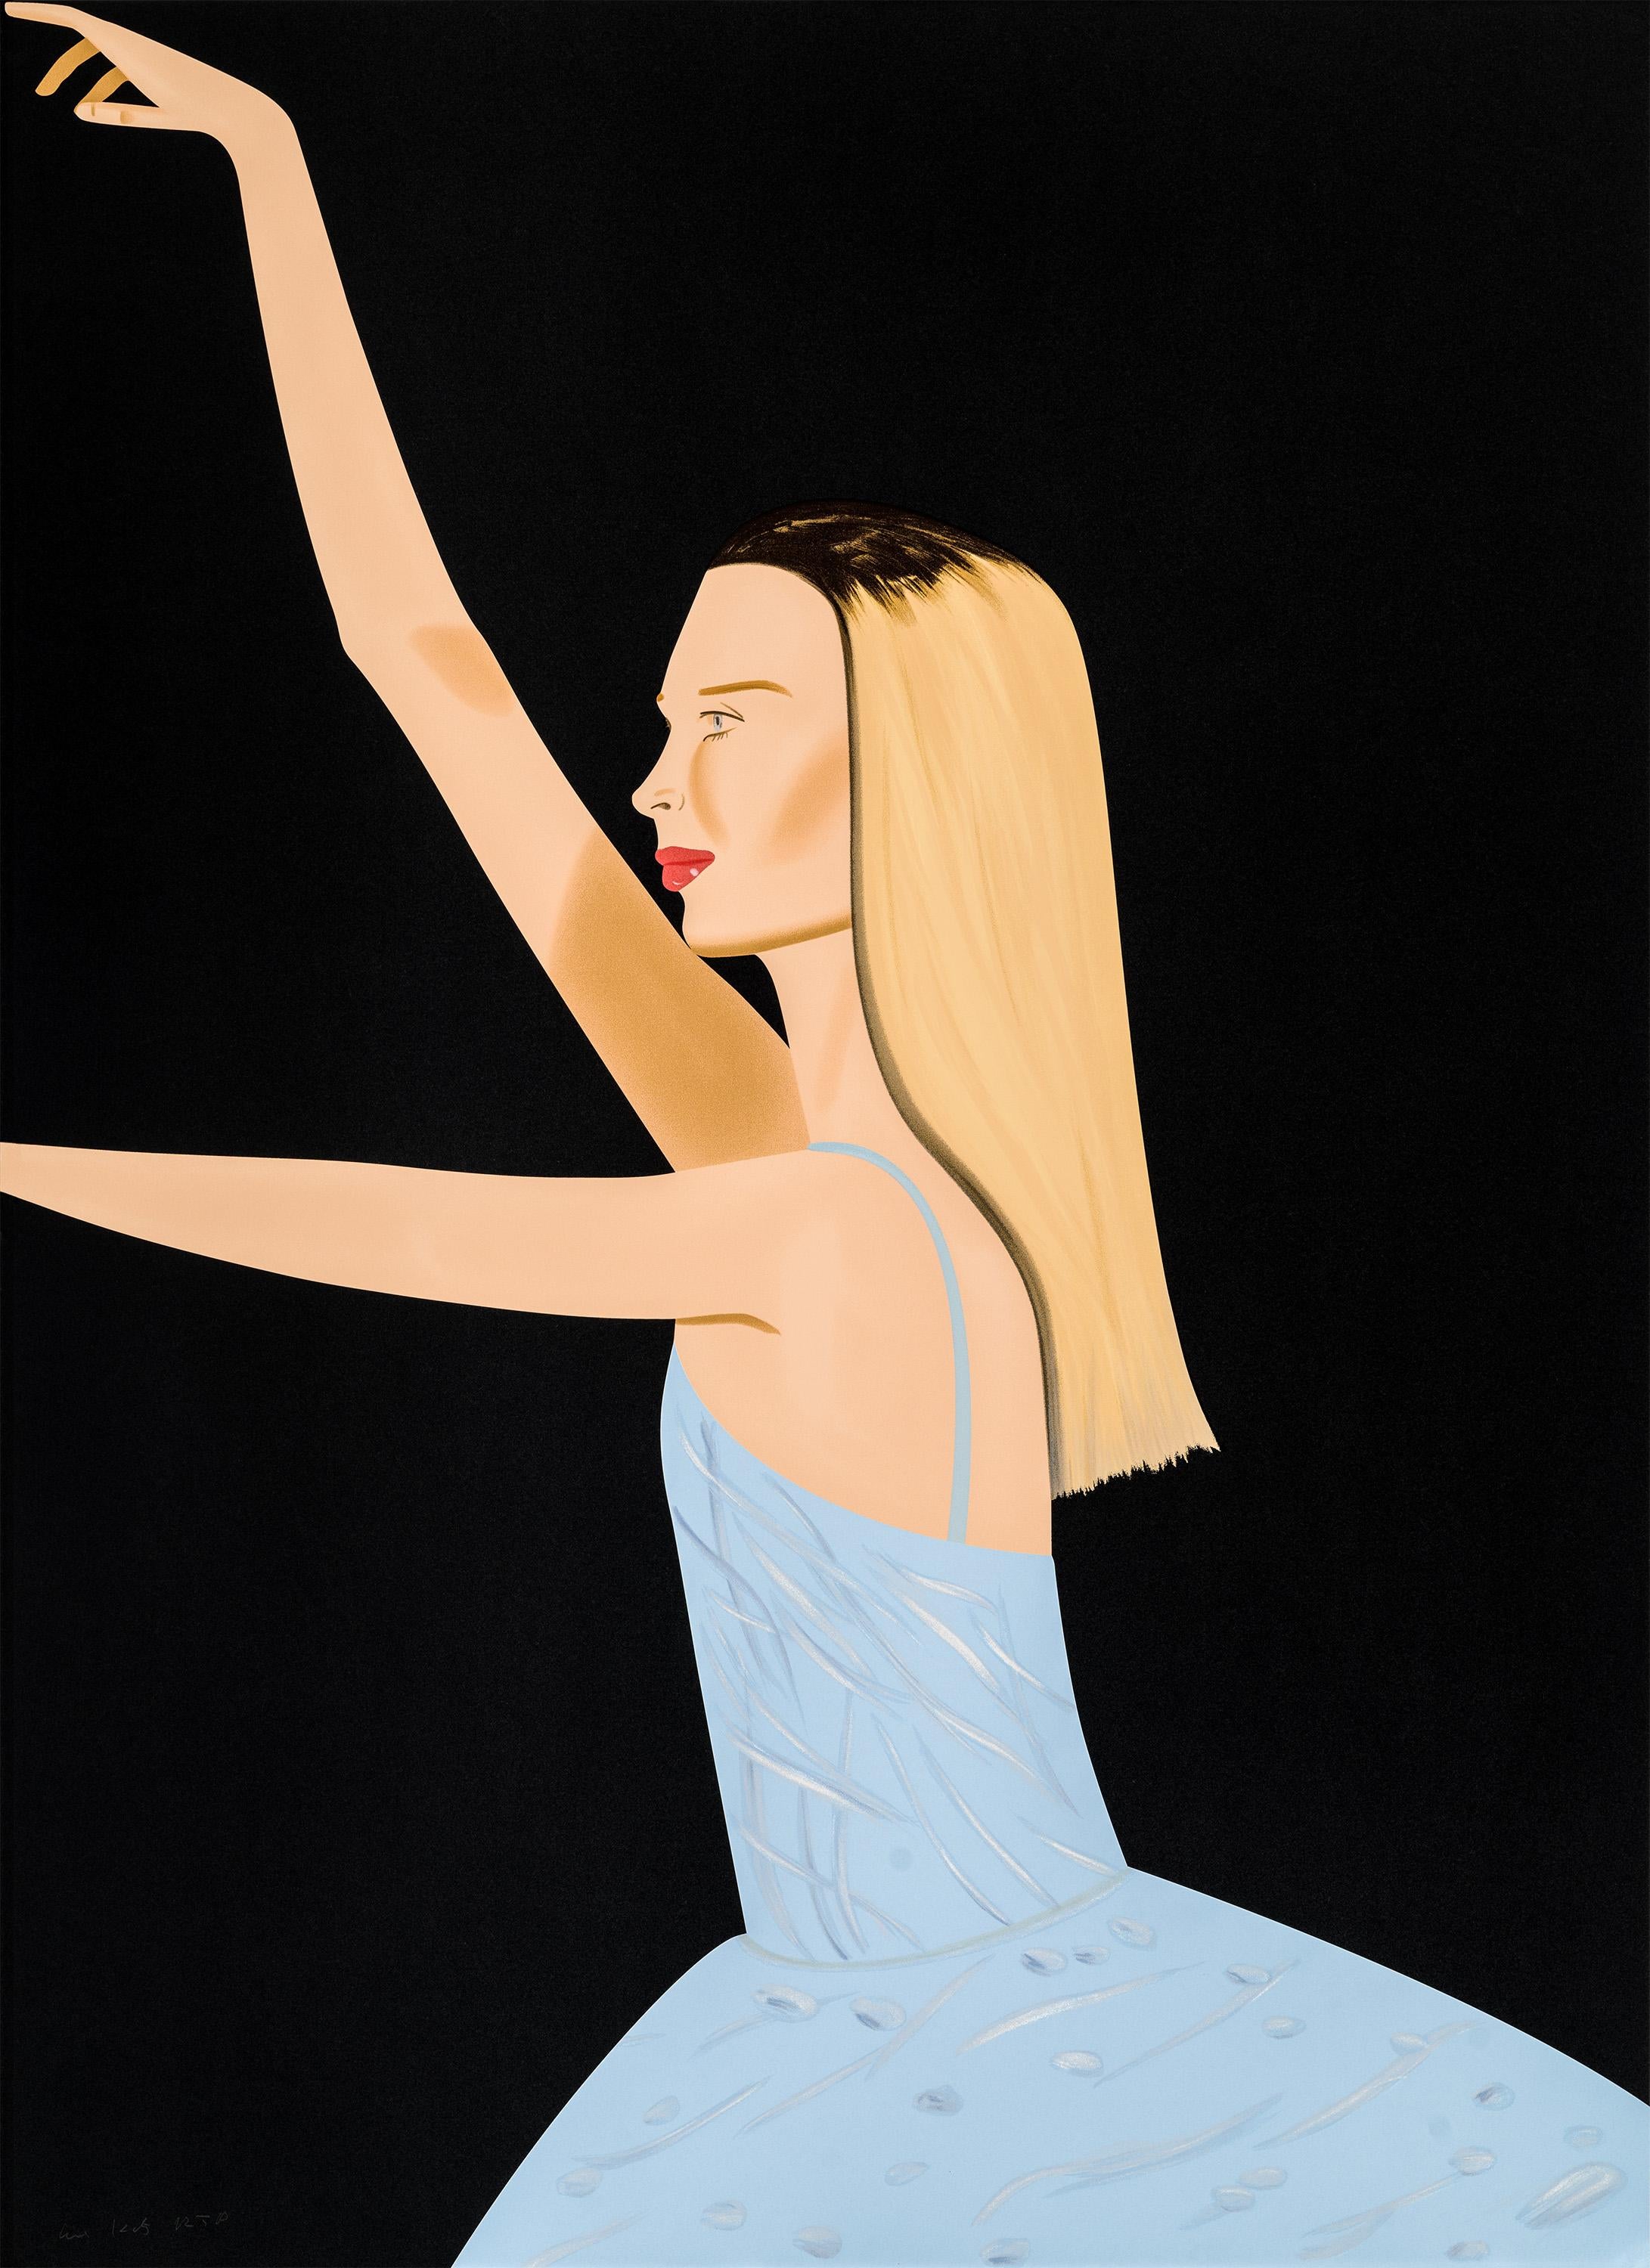 Dancer 2 - Ballett, tanzend, hellblau, schwarz, blondes Kleid